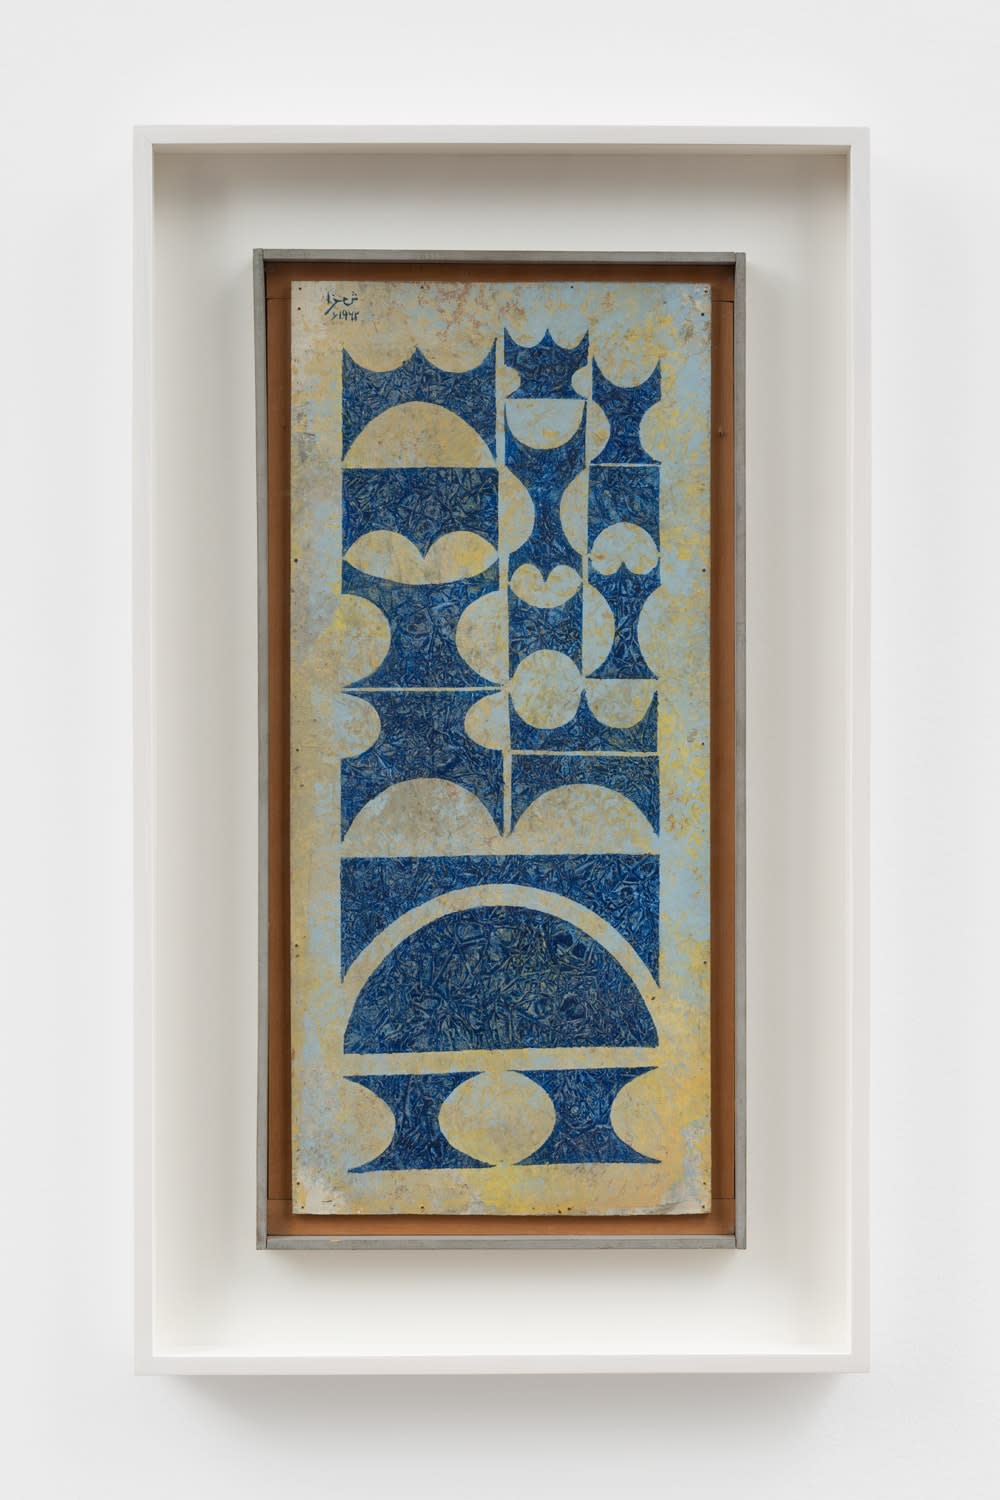 Anwar Jalal Shemza, Blue Composition, 1962